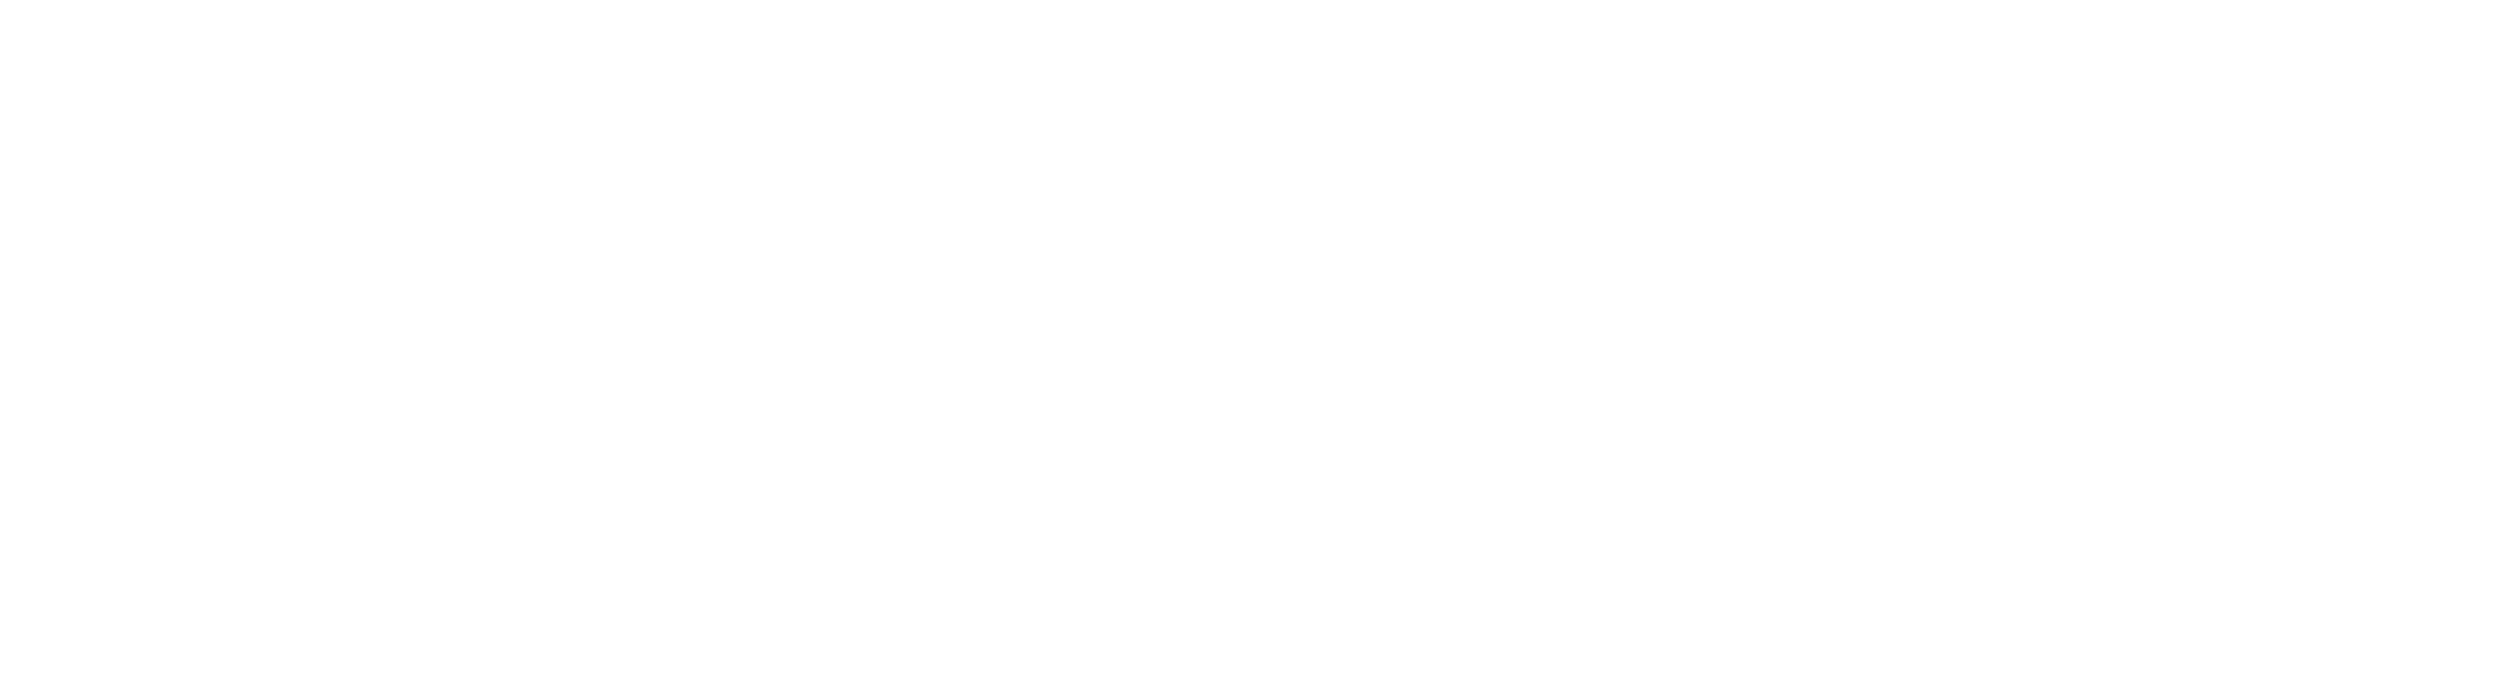 Harpers_Bazaar_logo_logotype.png